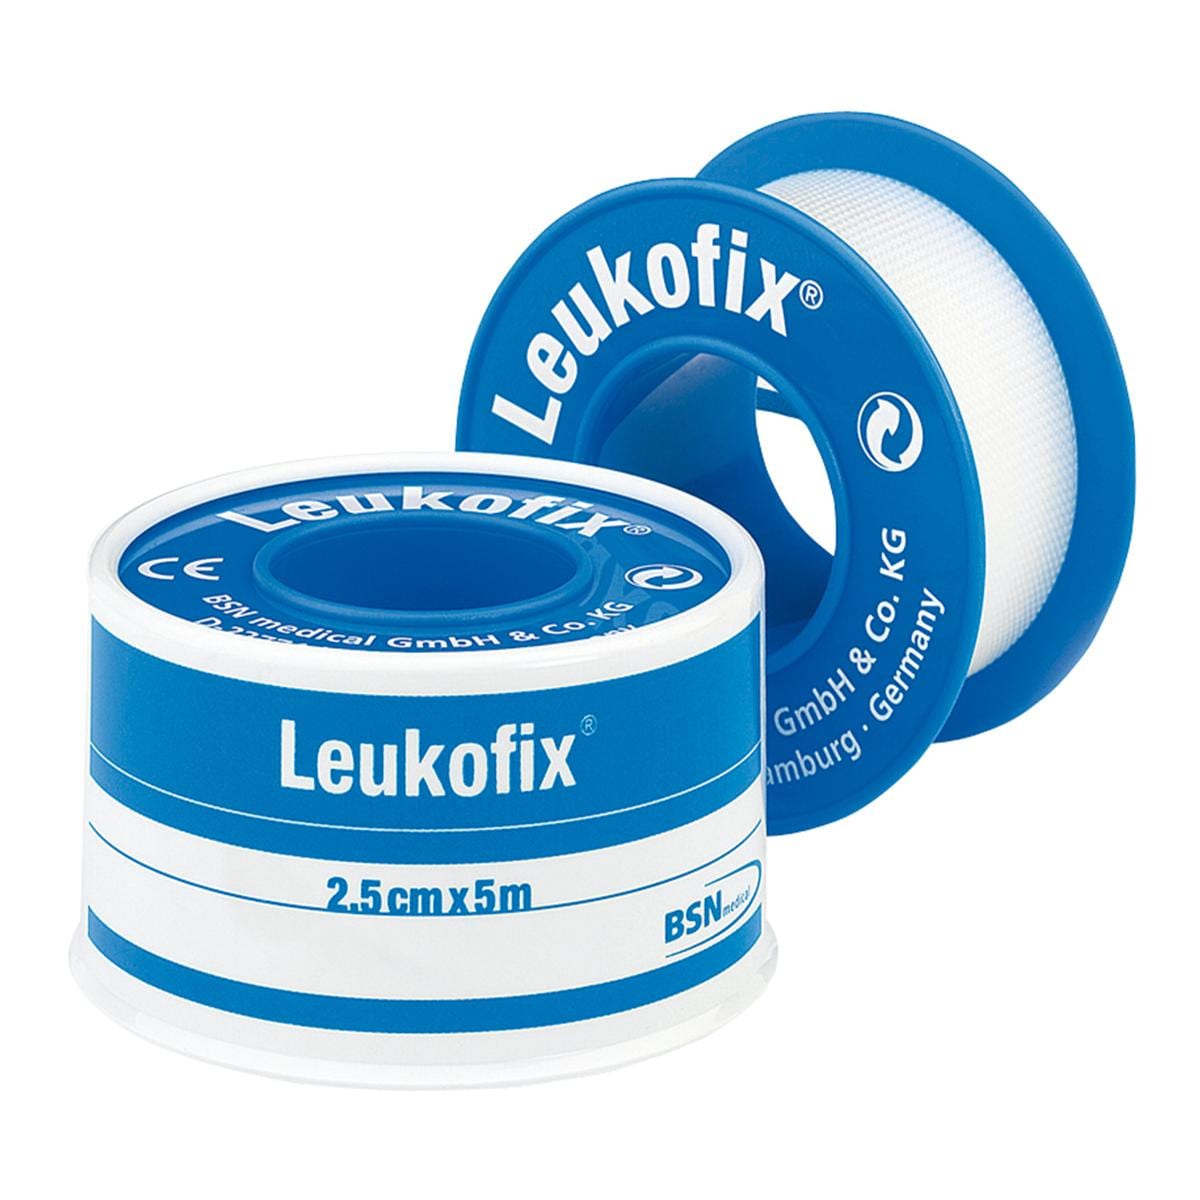 Leukofix - 2,5cm x 5m, 12 stuks